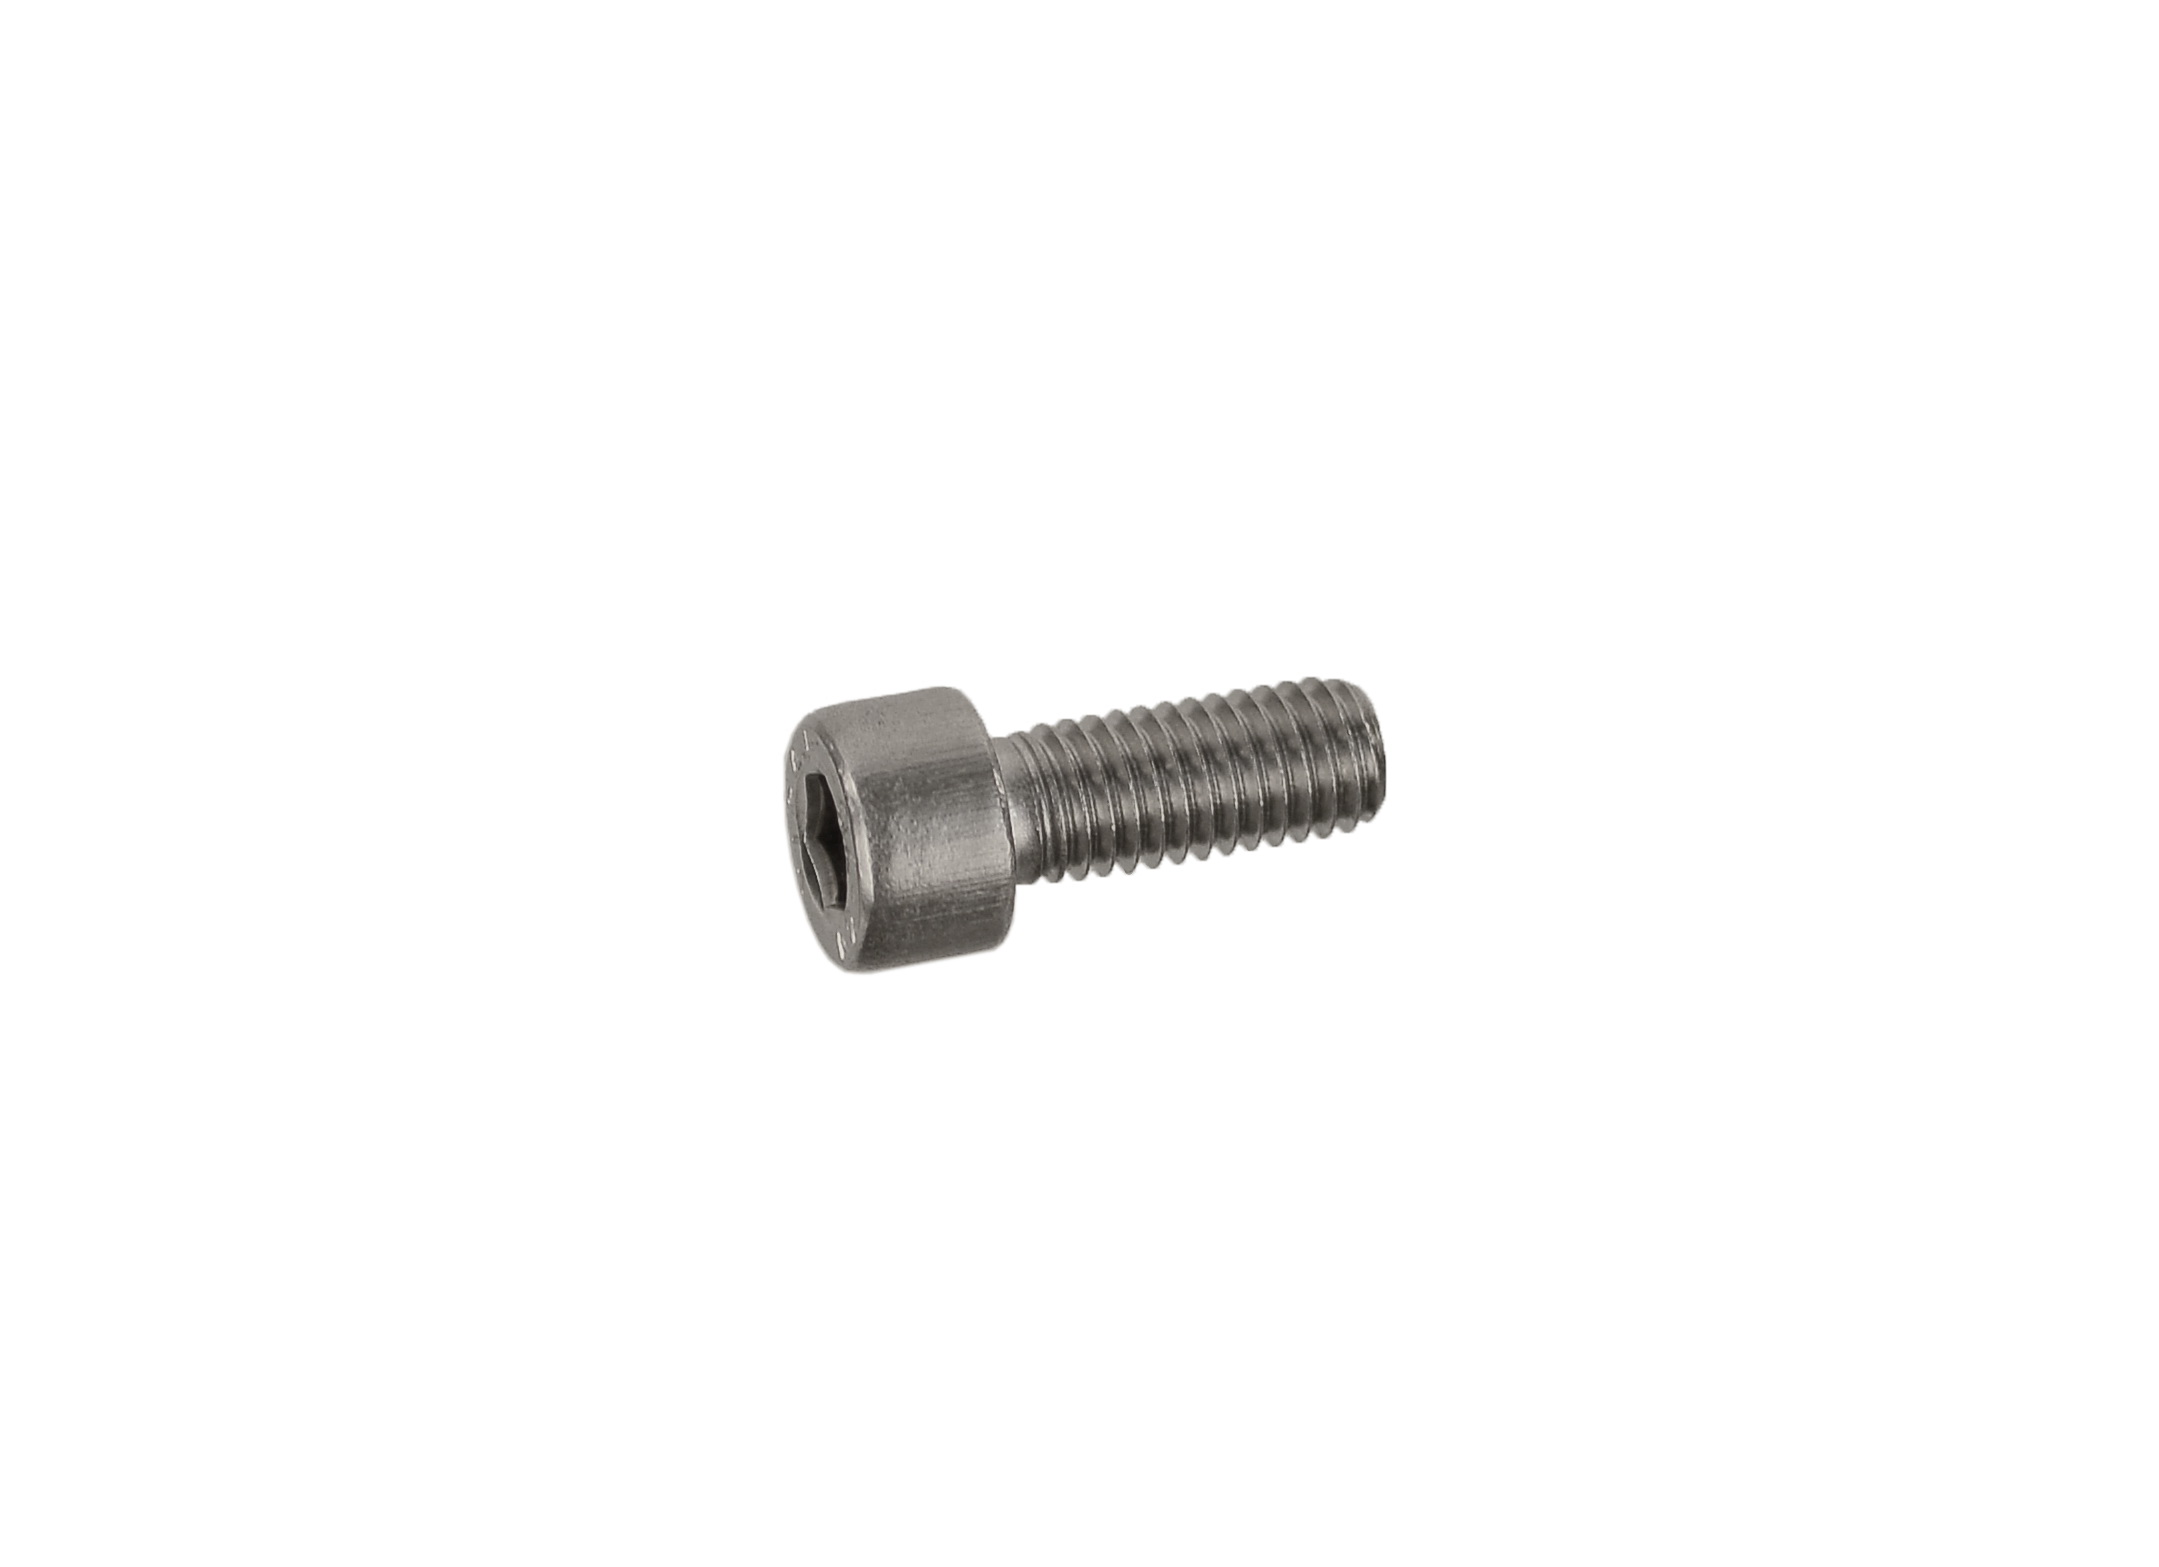 Cylinder head screw, M8 x 20